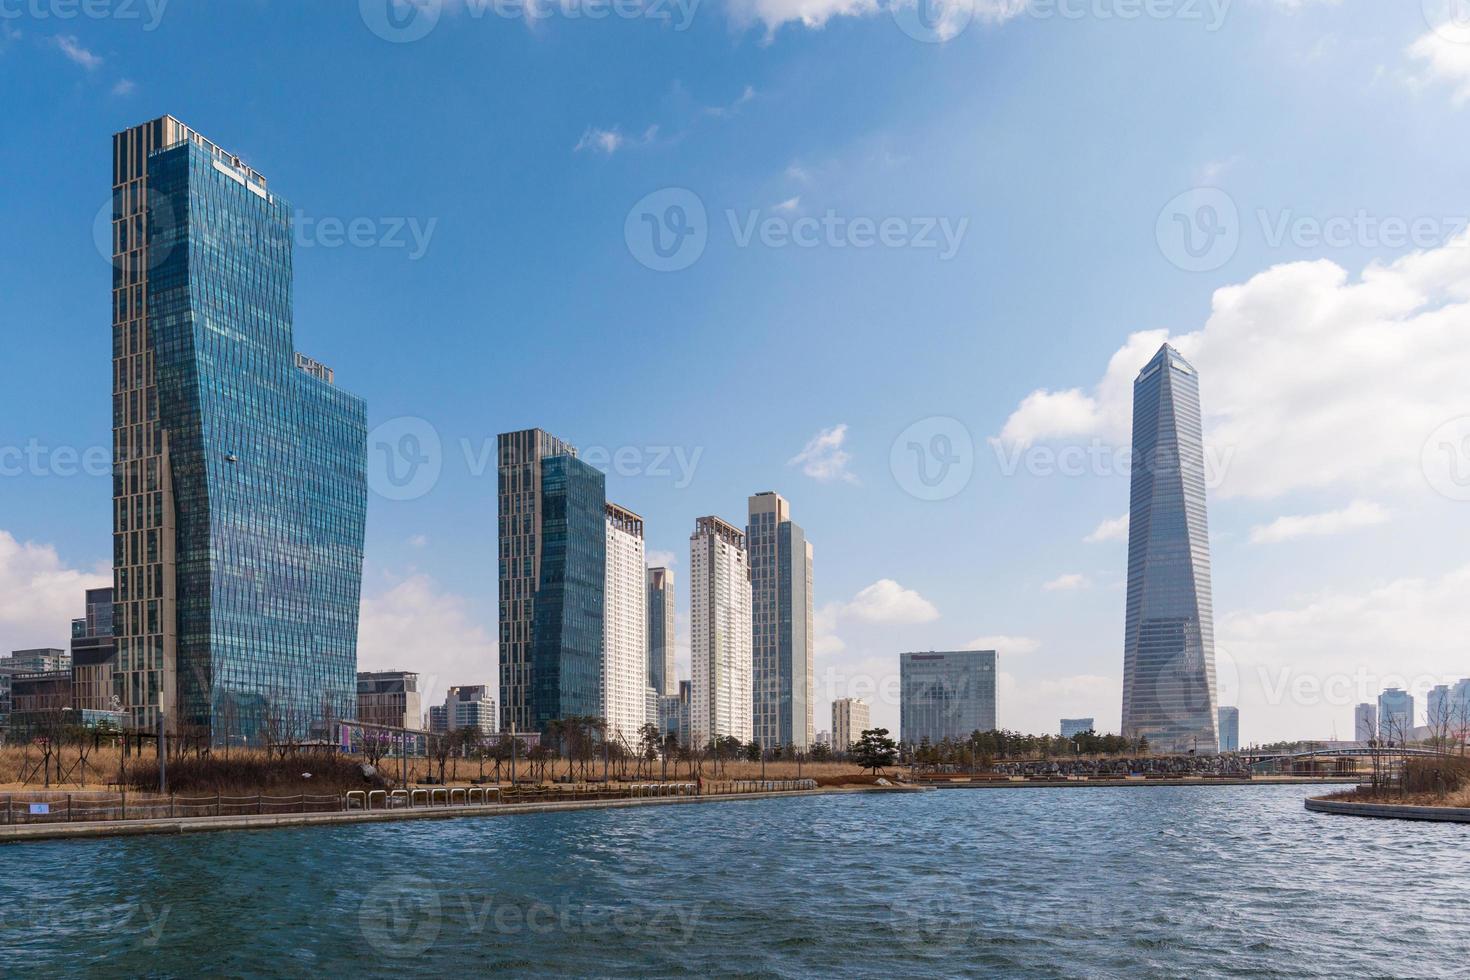 vue sur le paysage urbain d'un immeuble de bureaux et d'affaires moderne dans une ville intelligente en corée. photo